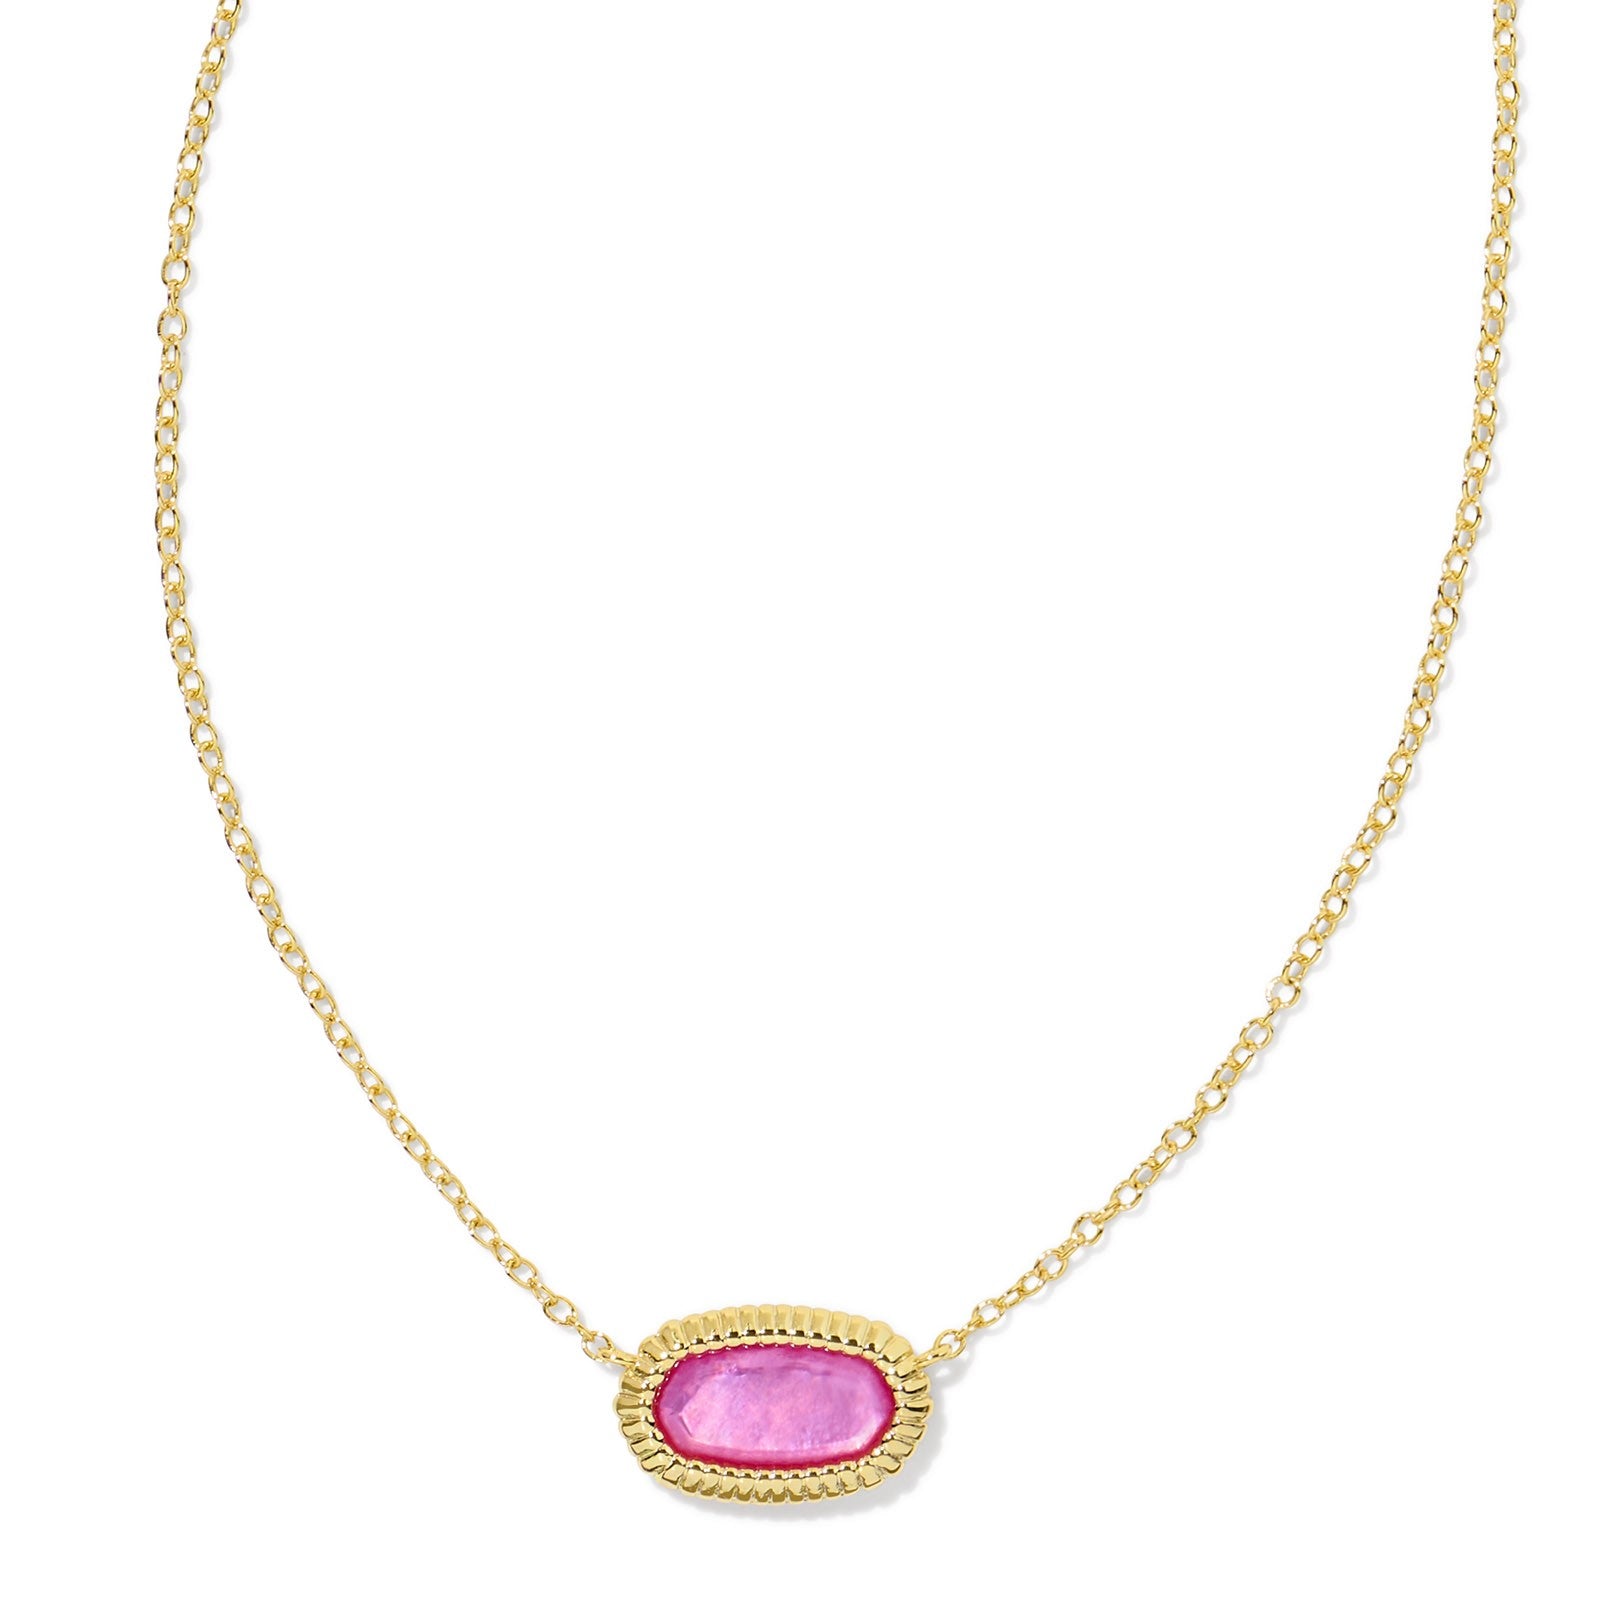 Kendra Scott | Elisa Gold Ridge Frame Short Pendant Necklace in Azalea Illusion - Giddy Up Glamour Boutique